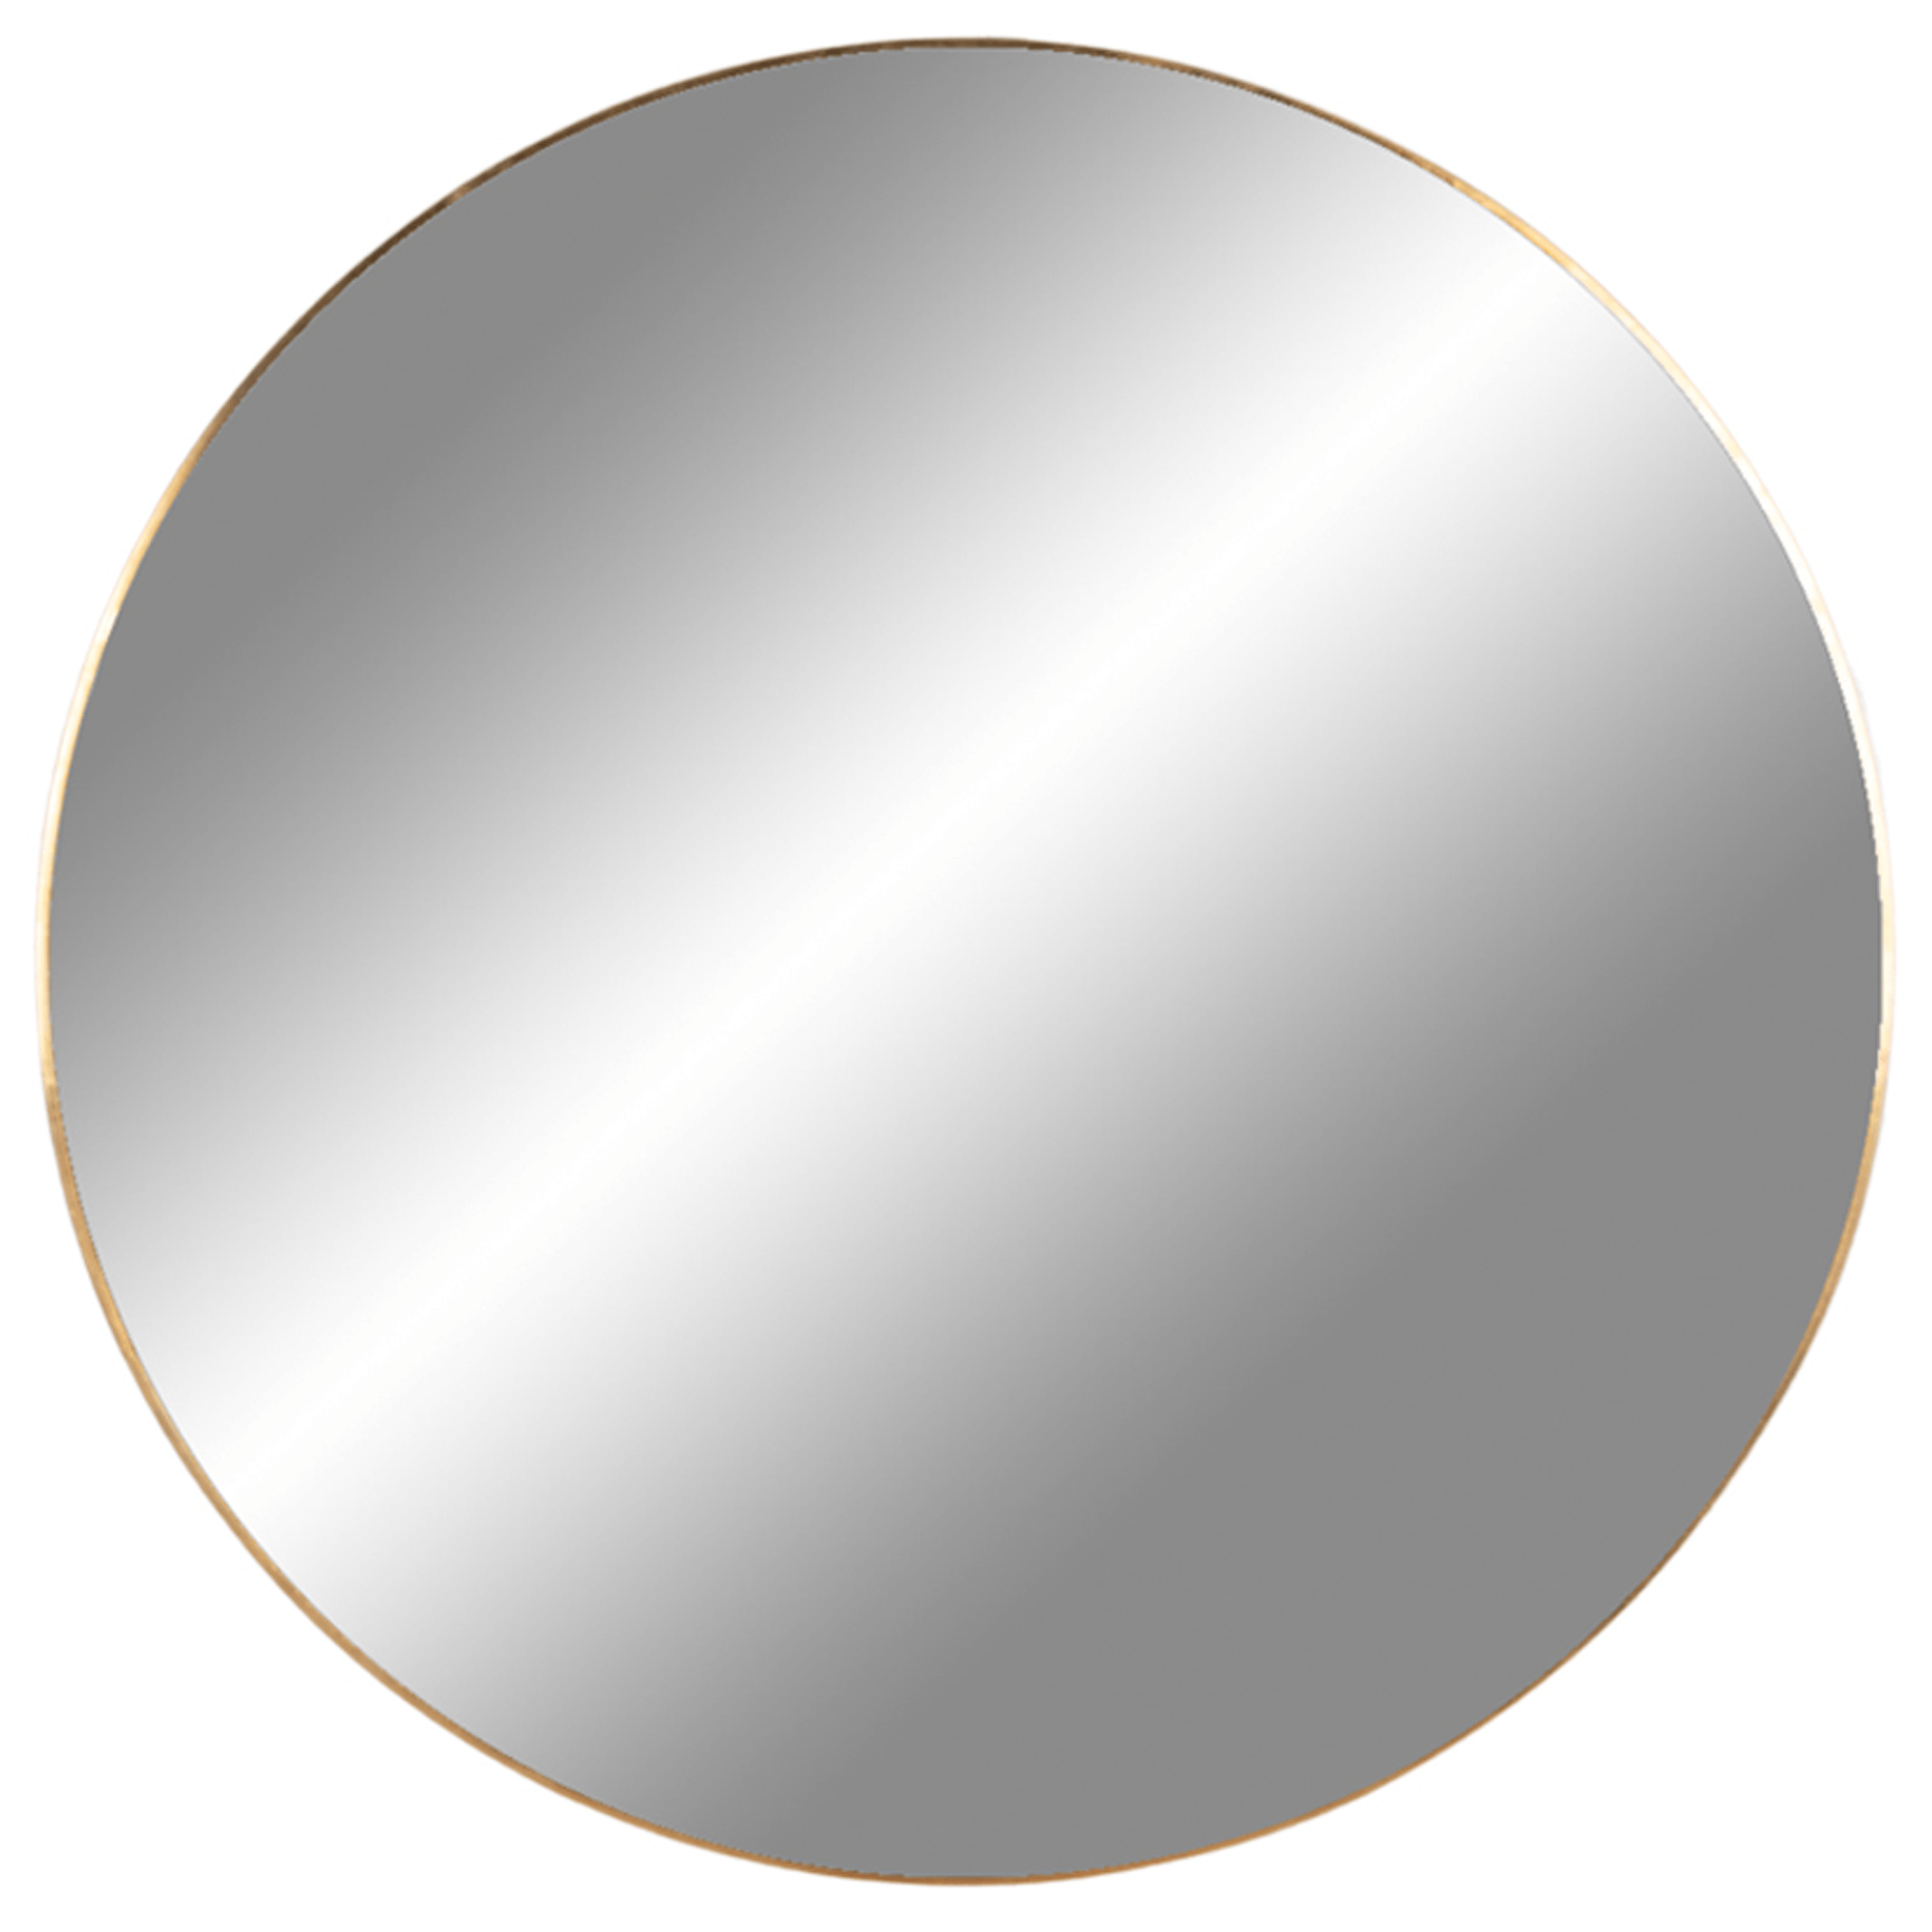 Billede af Cirkel spejl med messing ramme, Ø 80 cm.